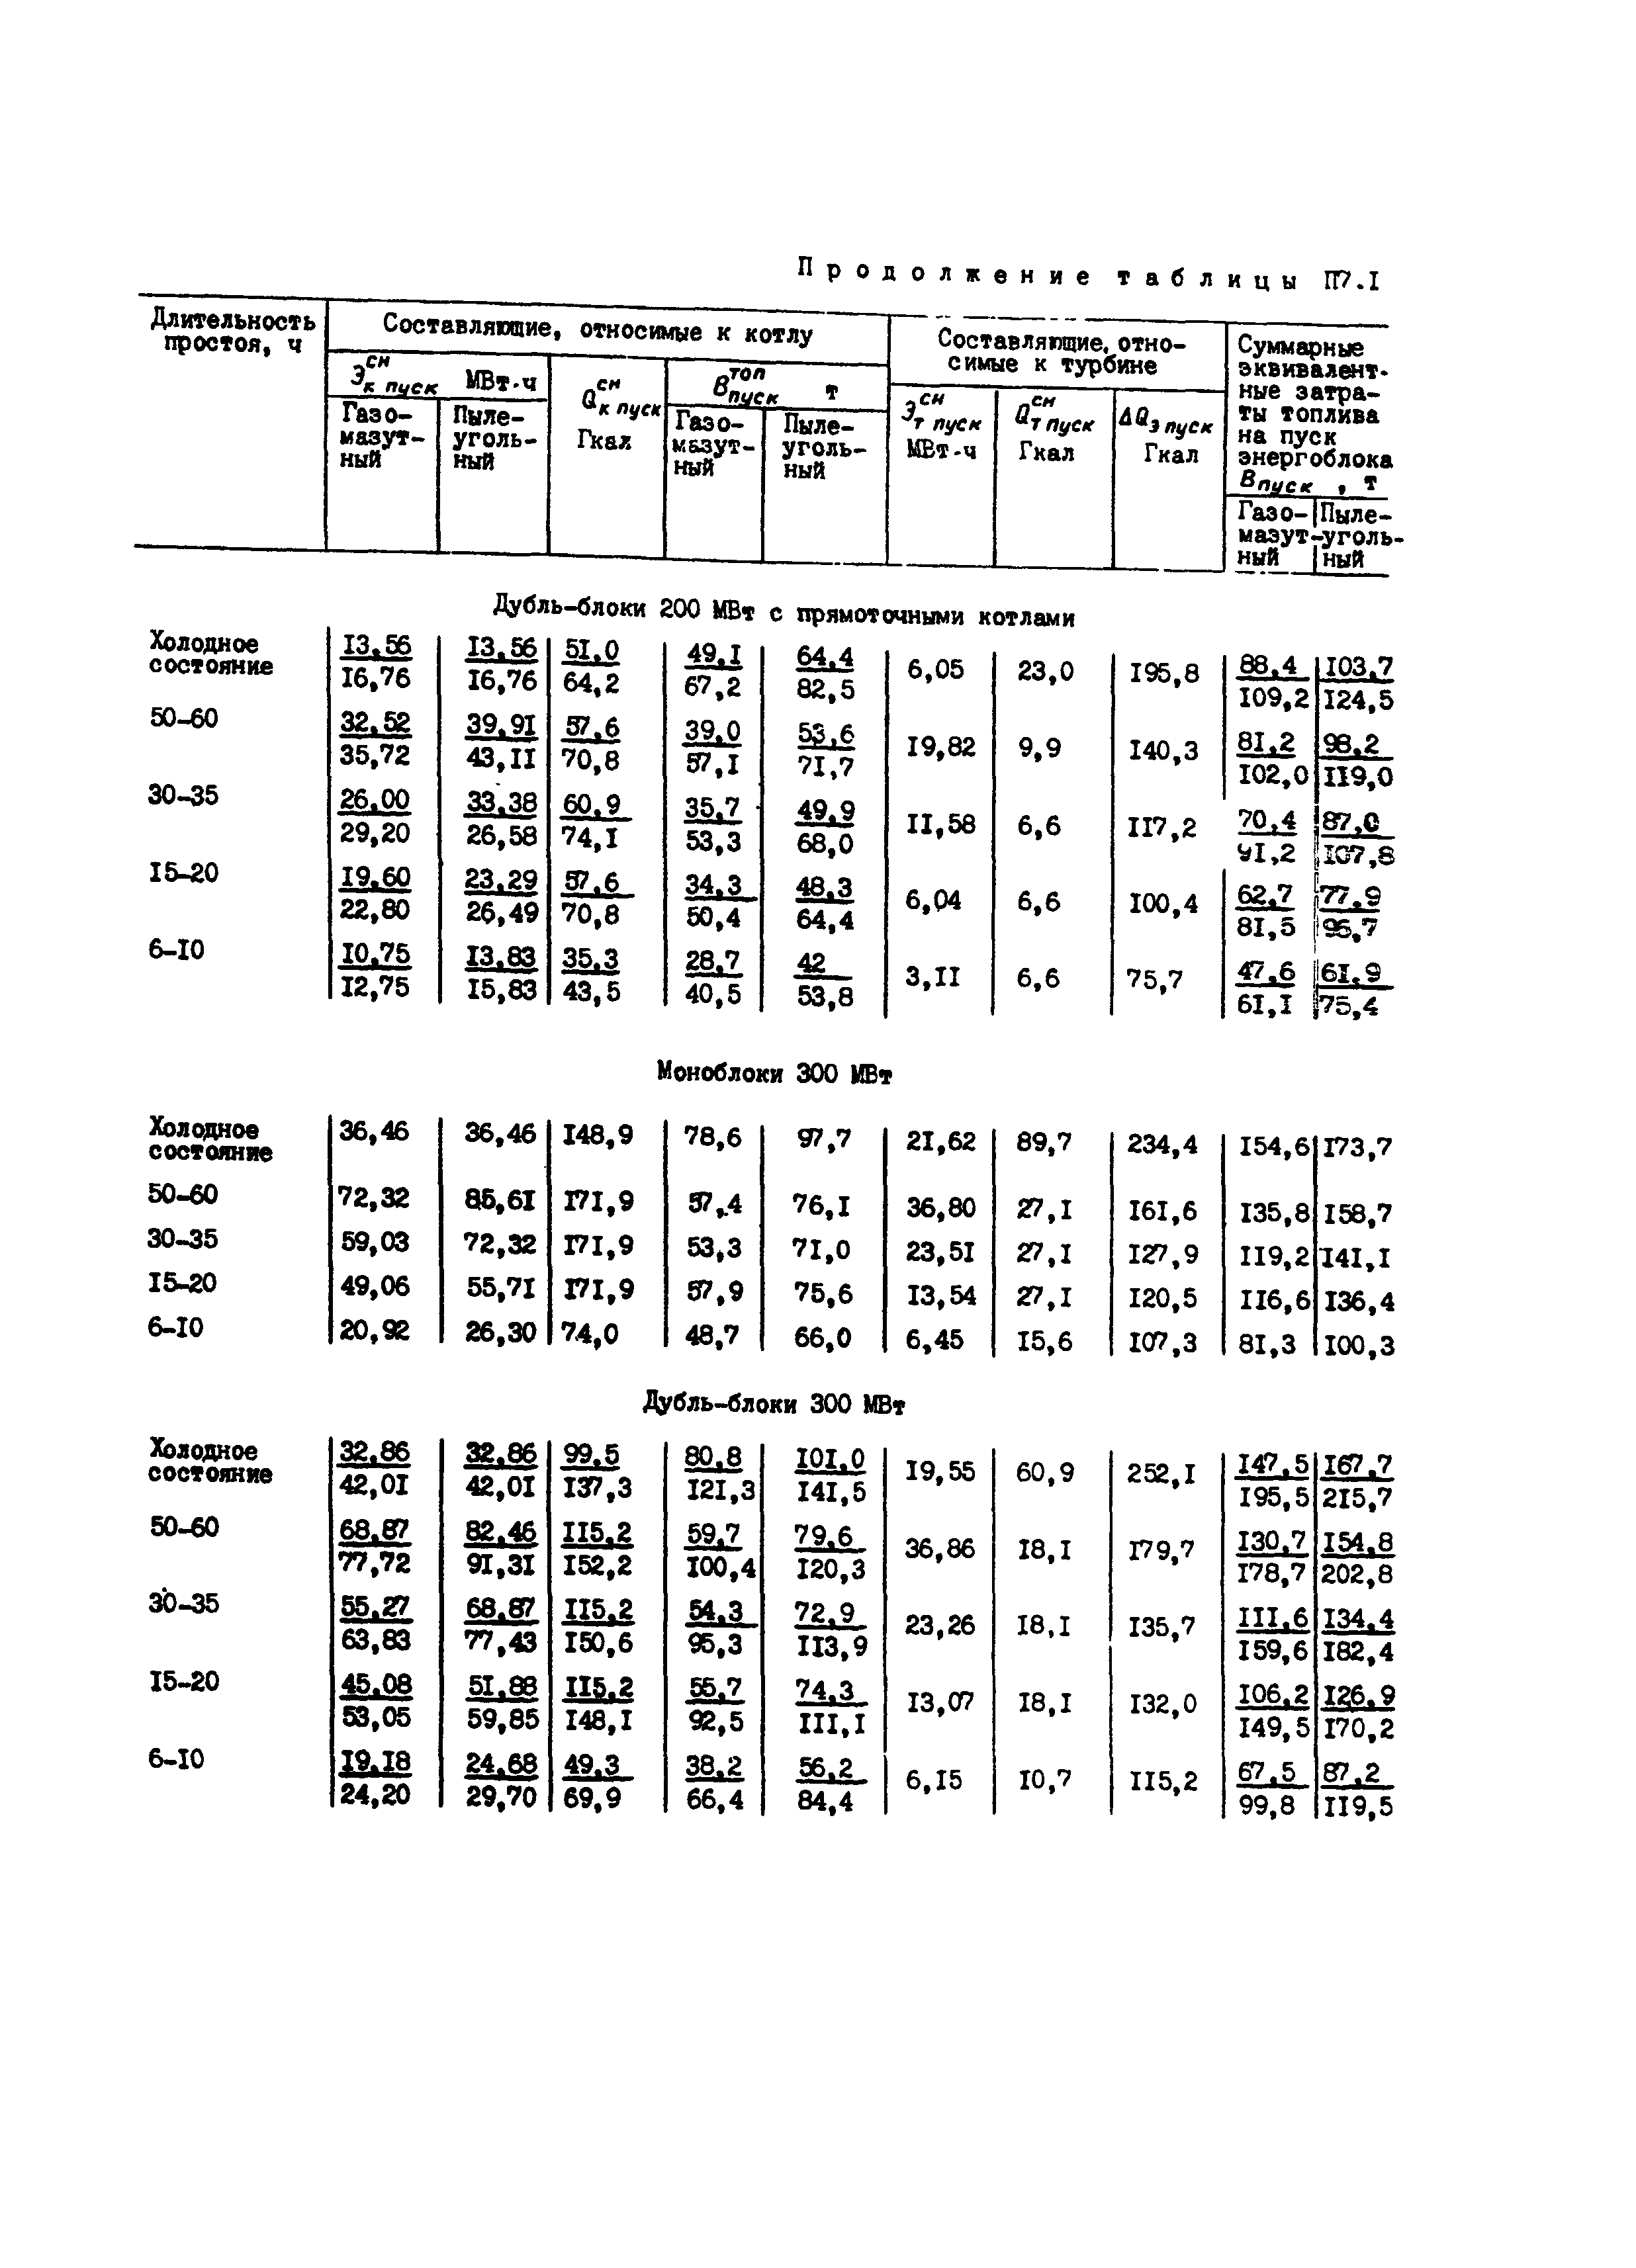 РД 34.08.552-95